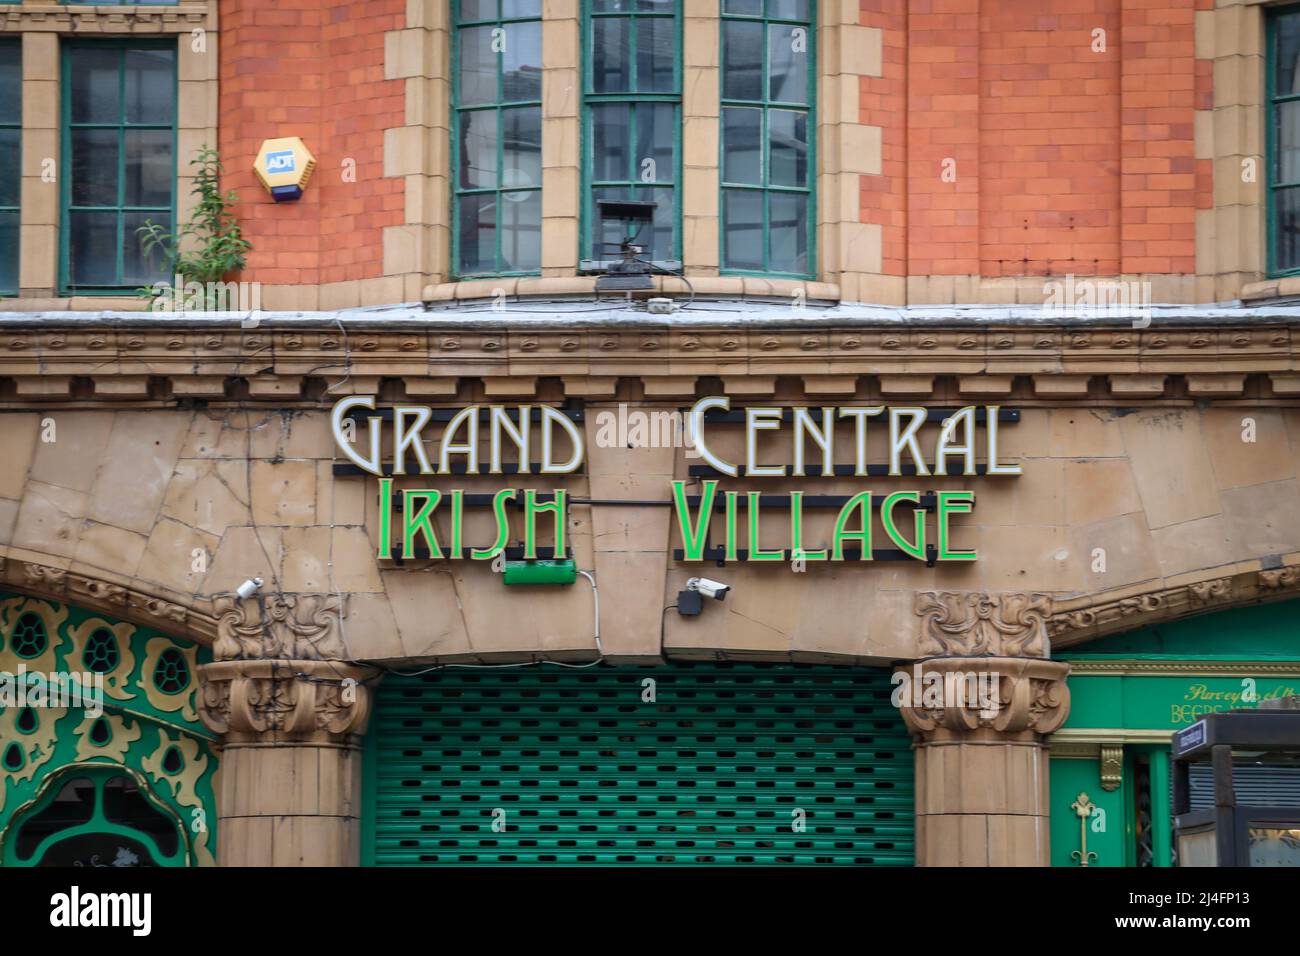 Grand Central Irish Village, Liverpool Foto Stock